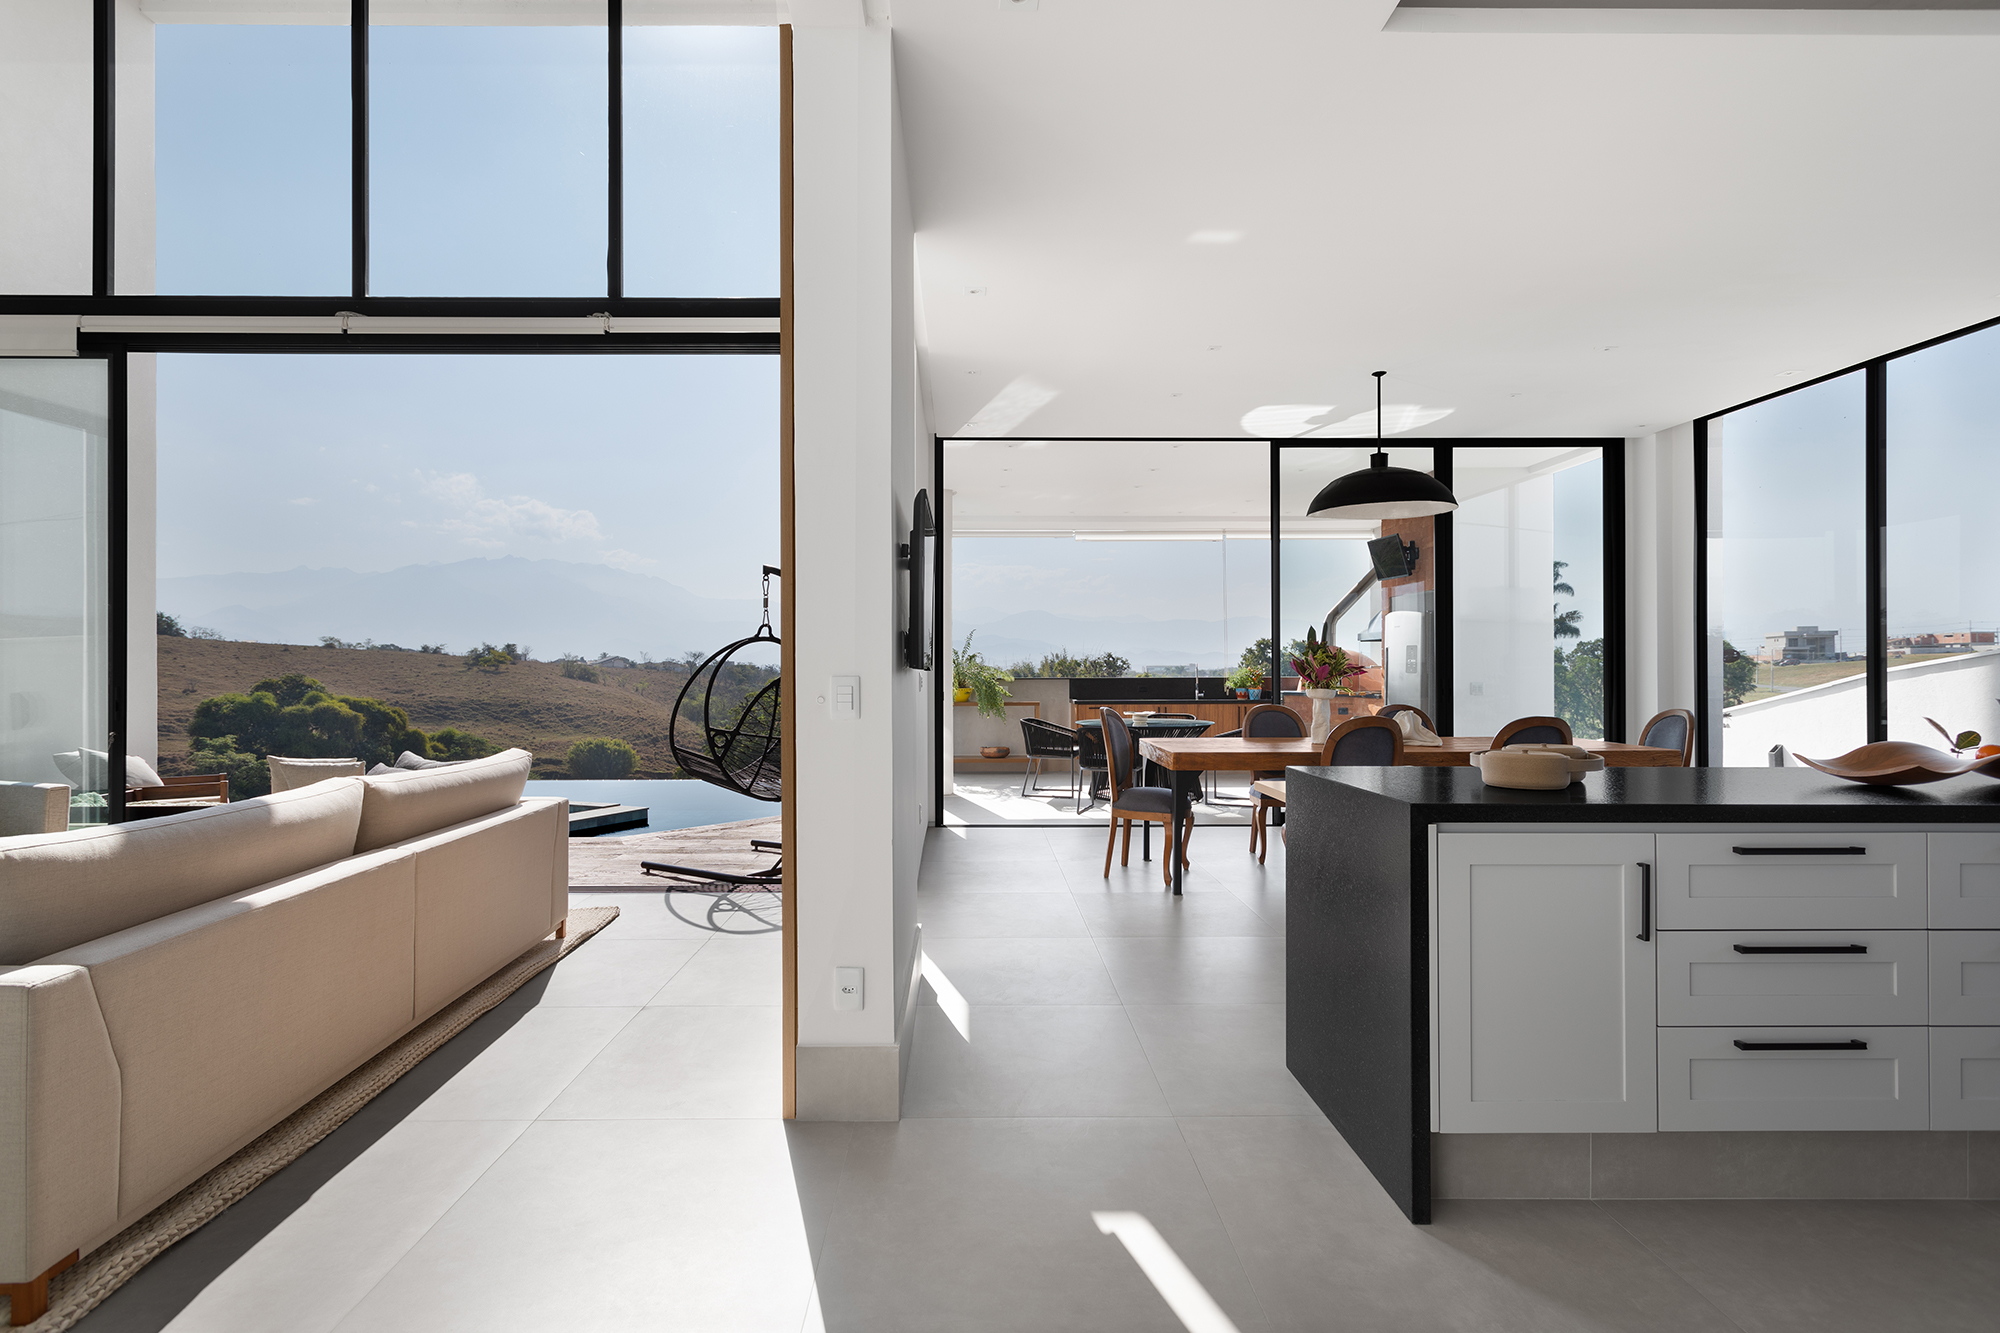 Casa de 435 m² com vista para a Serra possui piscina em formato diagonal. Projeto de Vivi Cirello. Na foto, cozinha integrada com jantar e sala.